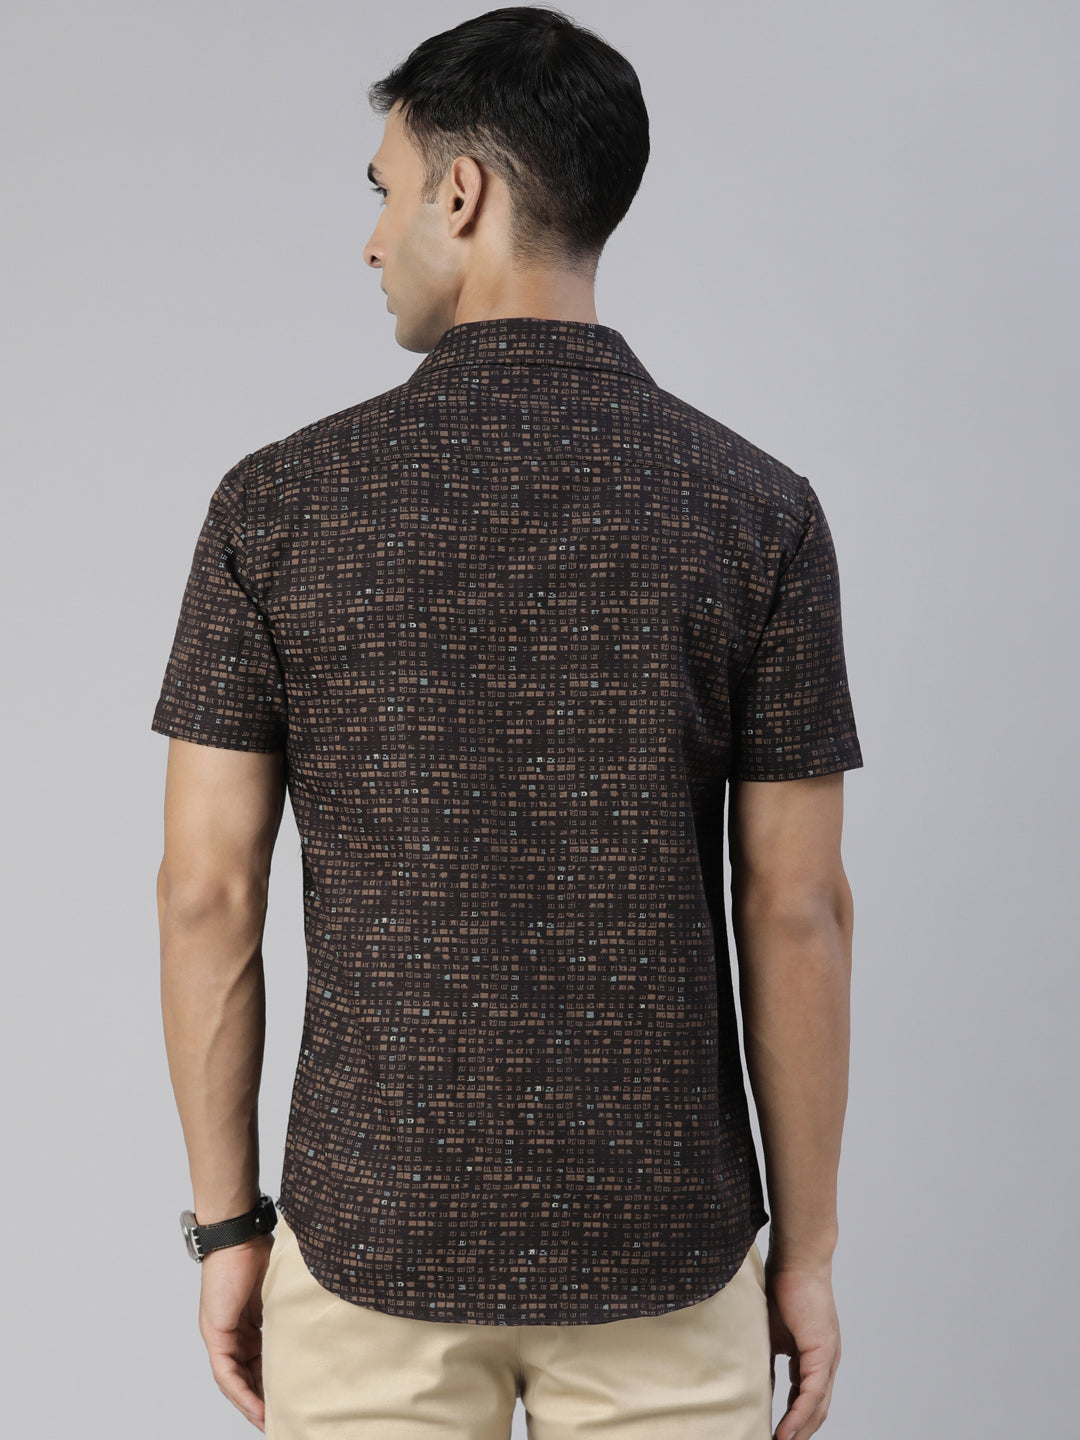 Dark Brown Printed Half Sleeves Shirt Printed Shirt Bushirt   